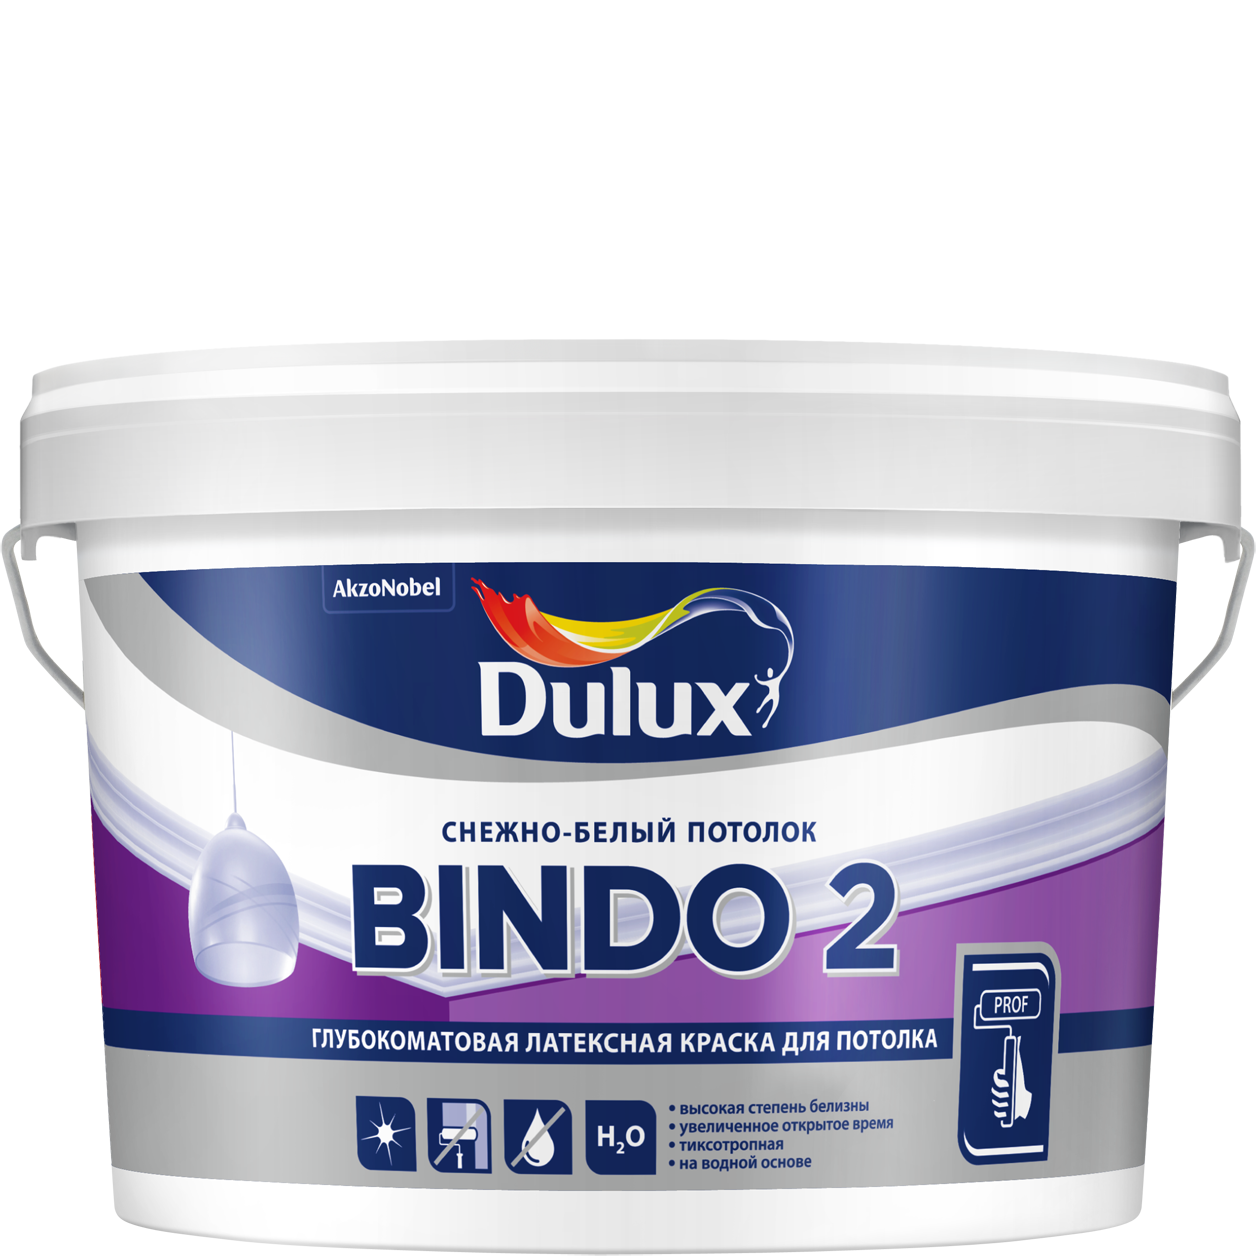 Краска Дьюлакс Биндо-2/Dulux Bindo 2 белоснежная, для потолков и стен купить Коломна, цена, отзывы. Фото N3